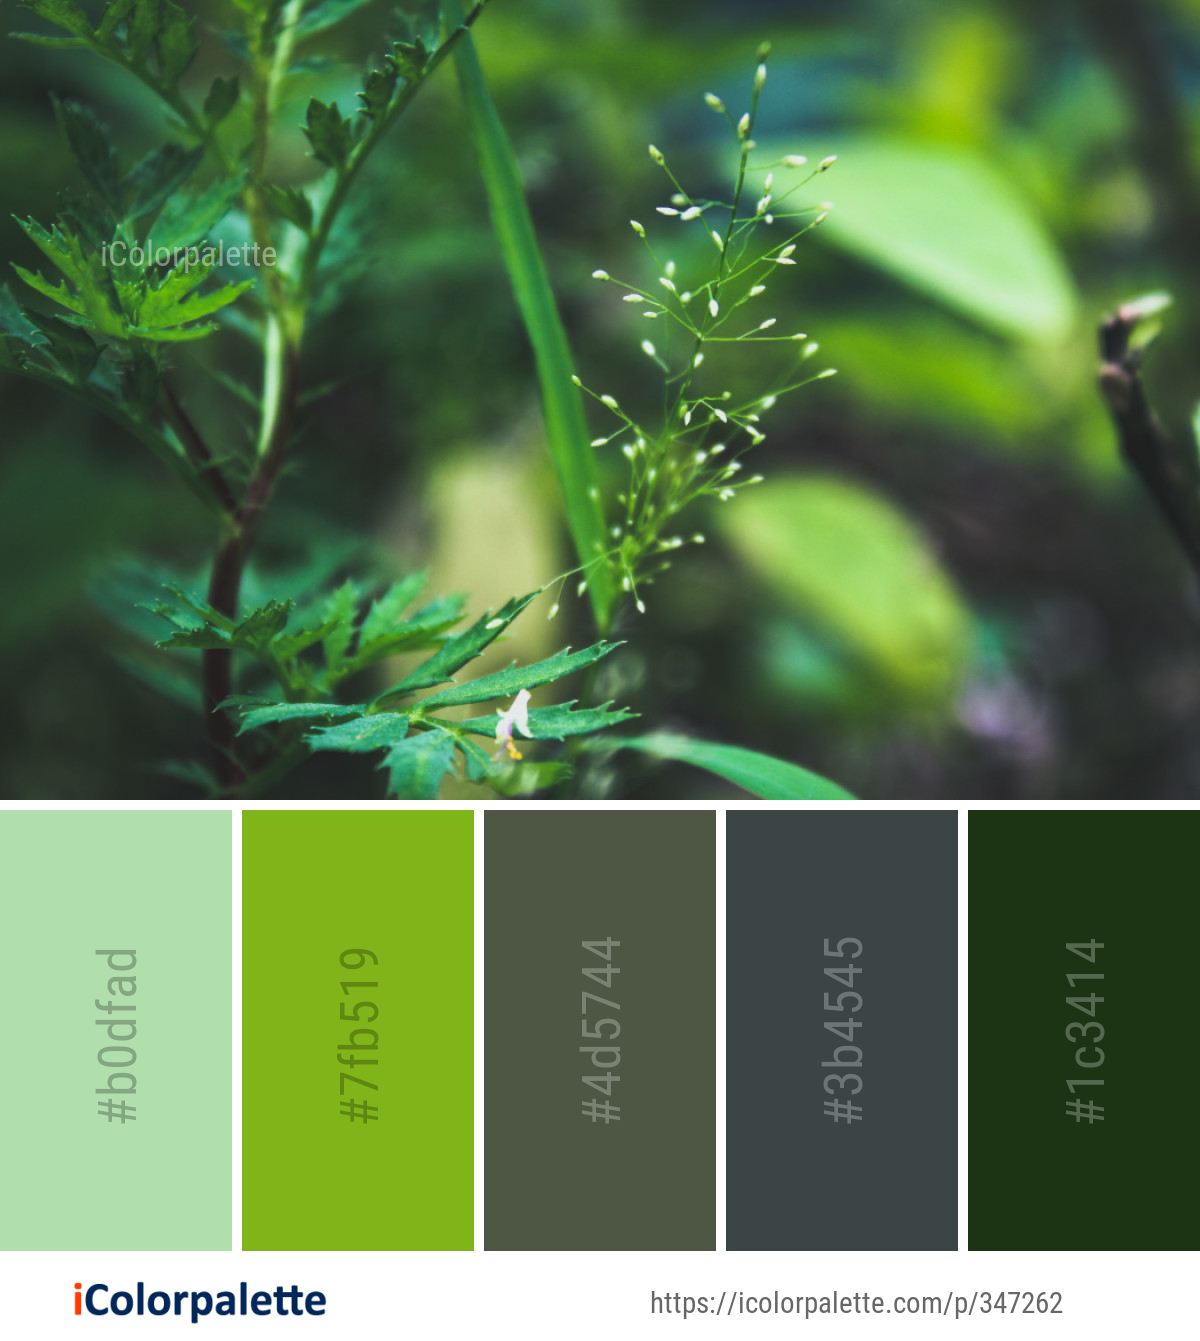 Color Palette Ideas from Vegetation Leaf Close Up Image